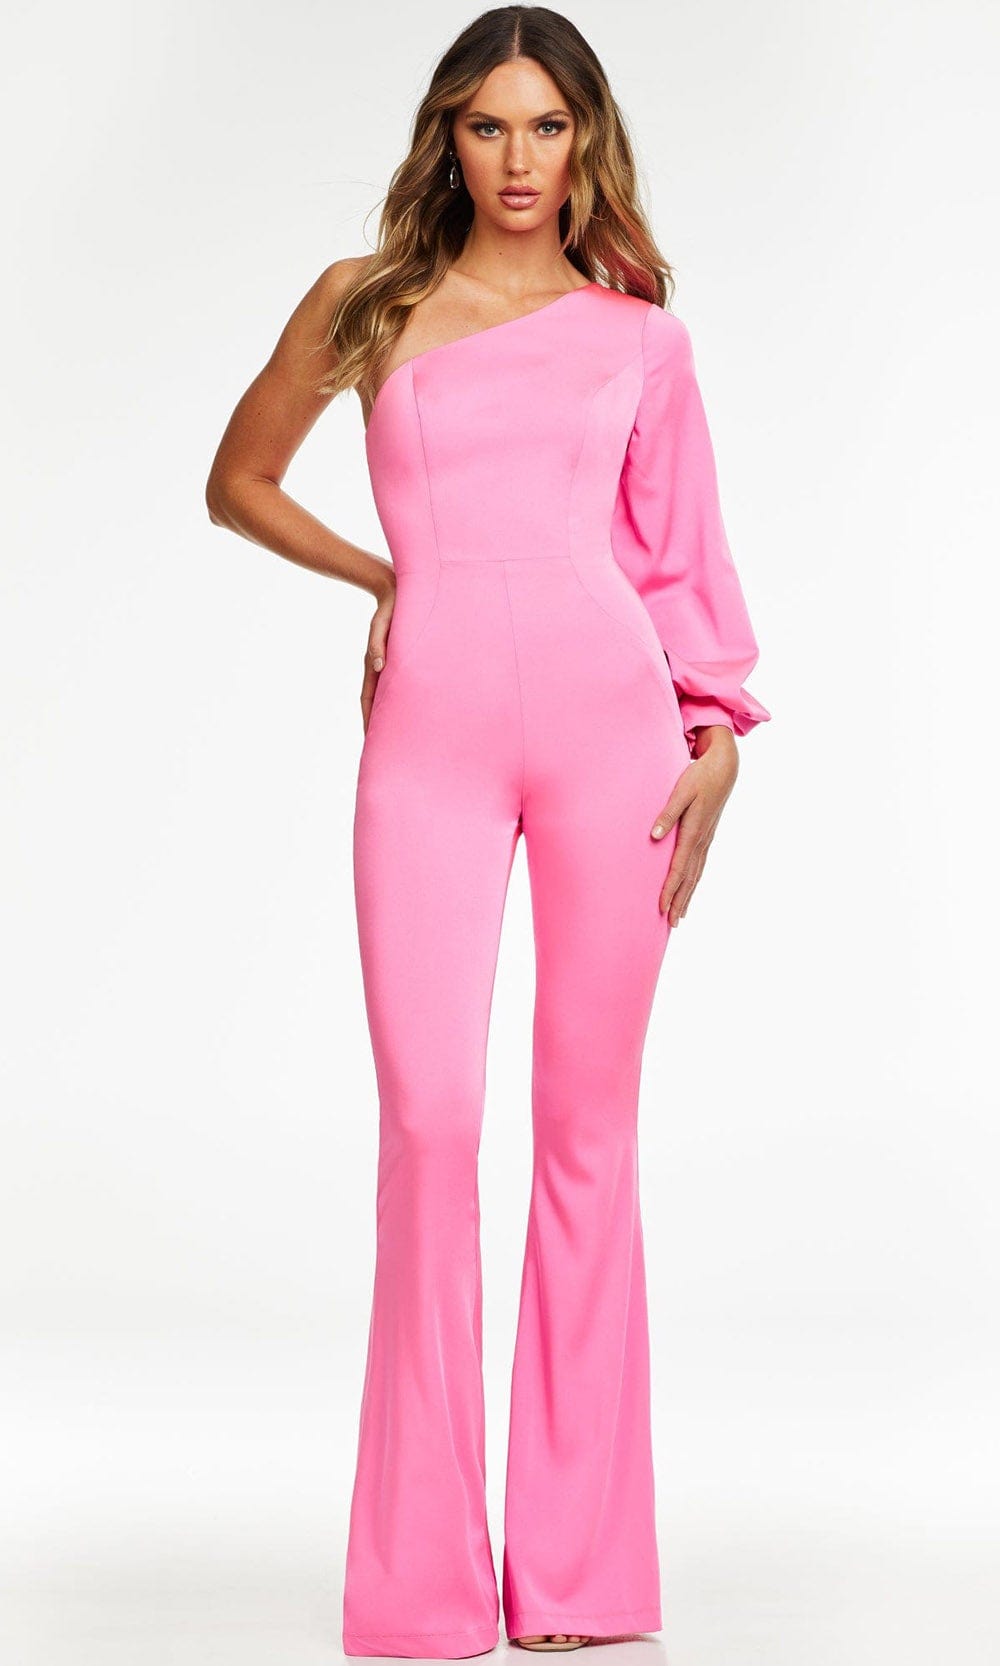 Ashley Lauren - 11168 Asymmetric Fitted Jumpsuit Evening Dresses 0 / Pink